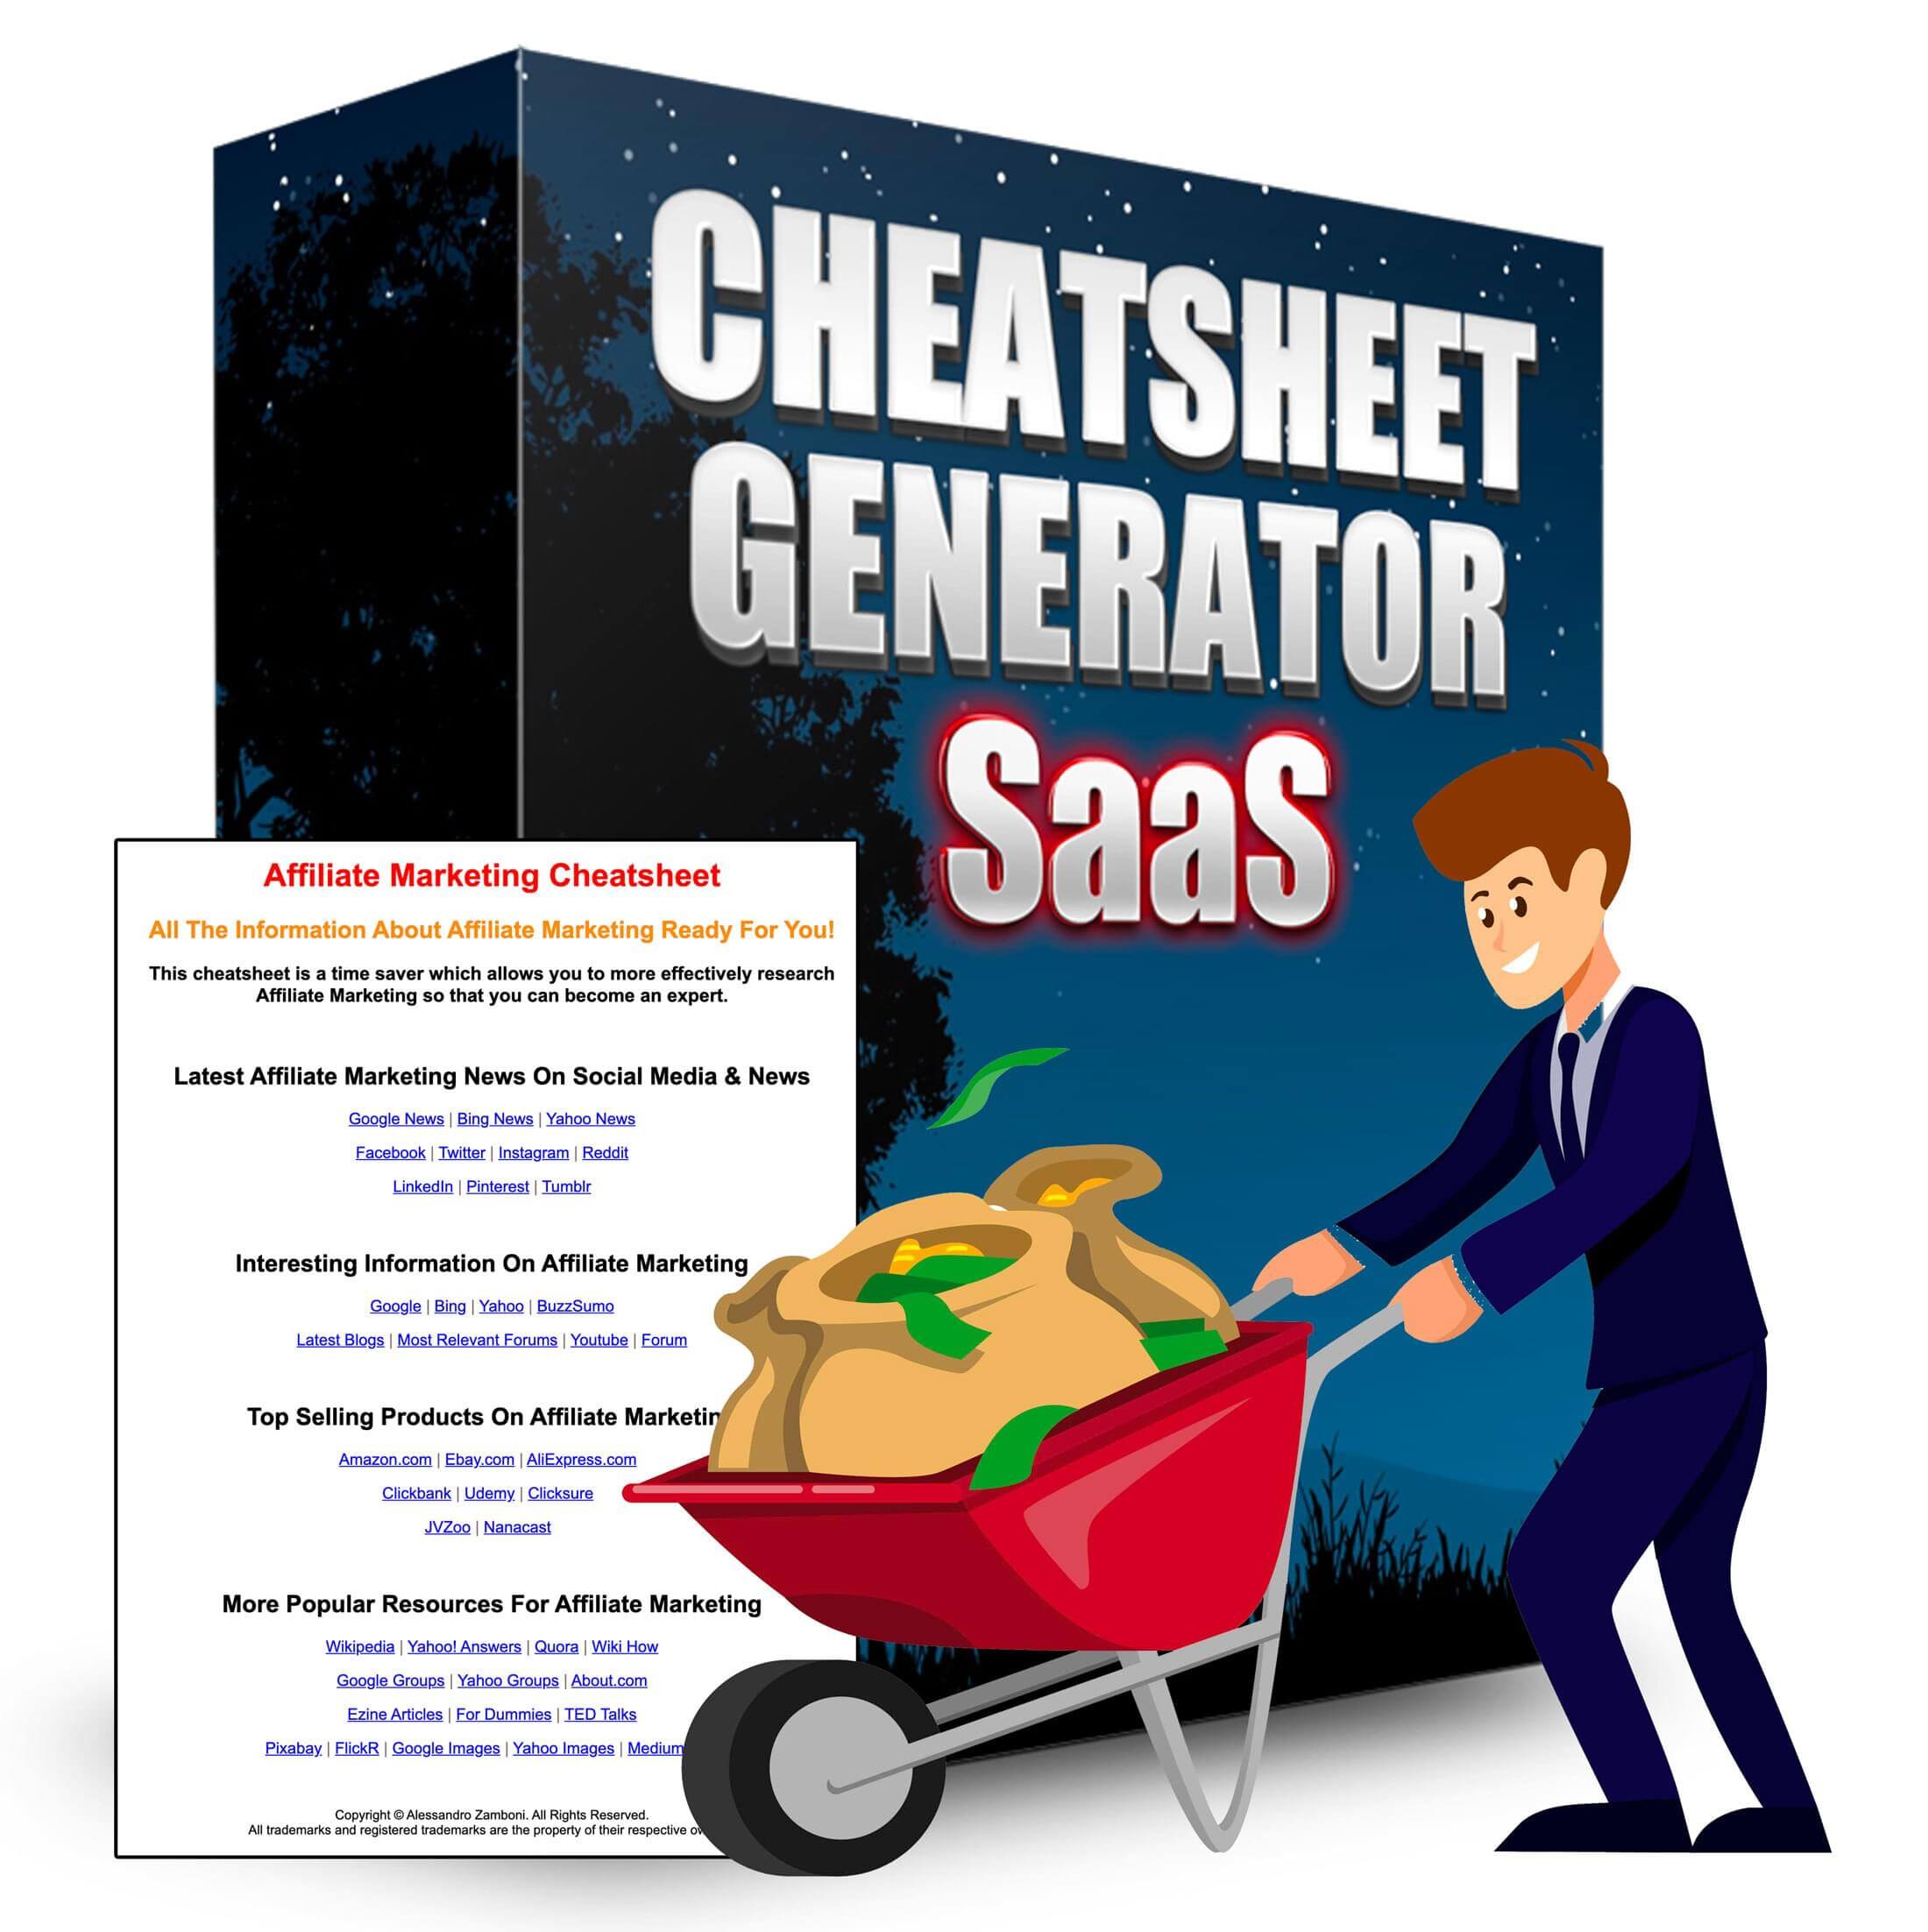 Cheatsheet-Generator-SaaS-Review